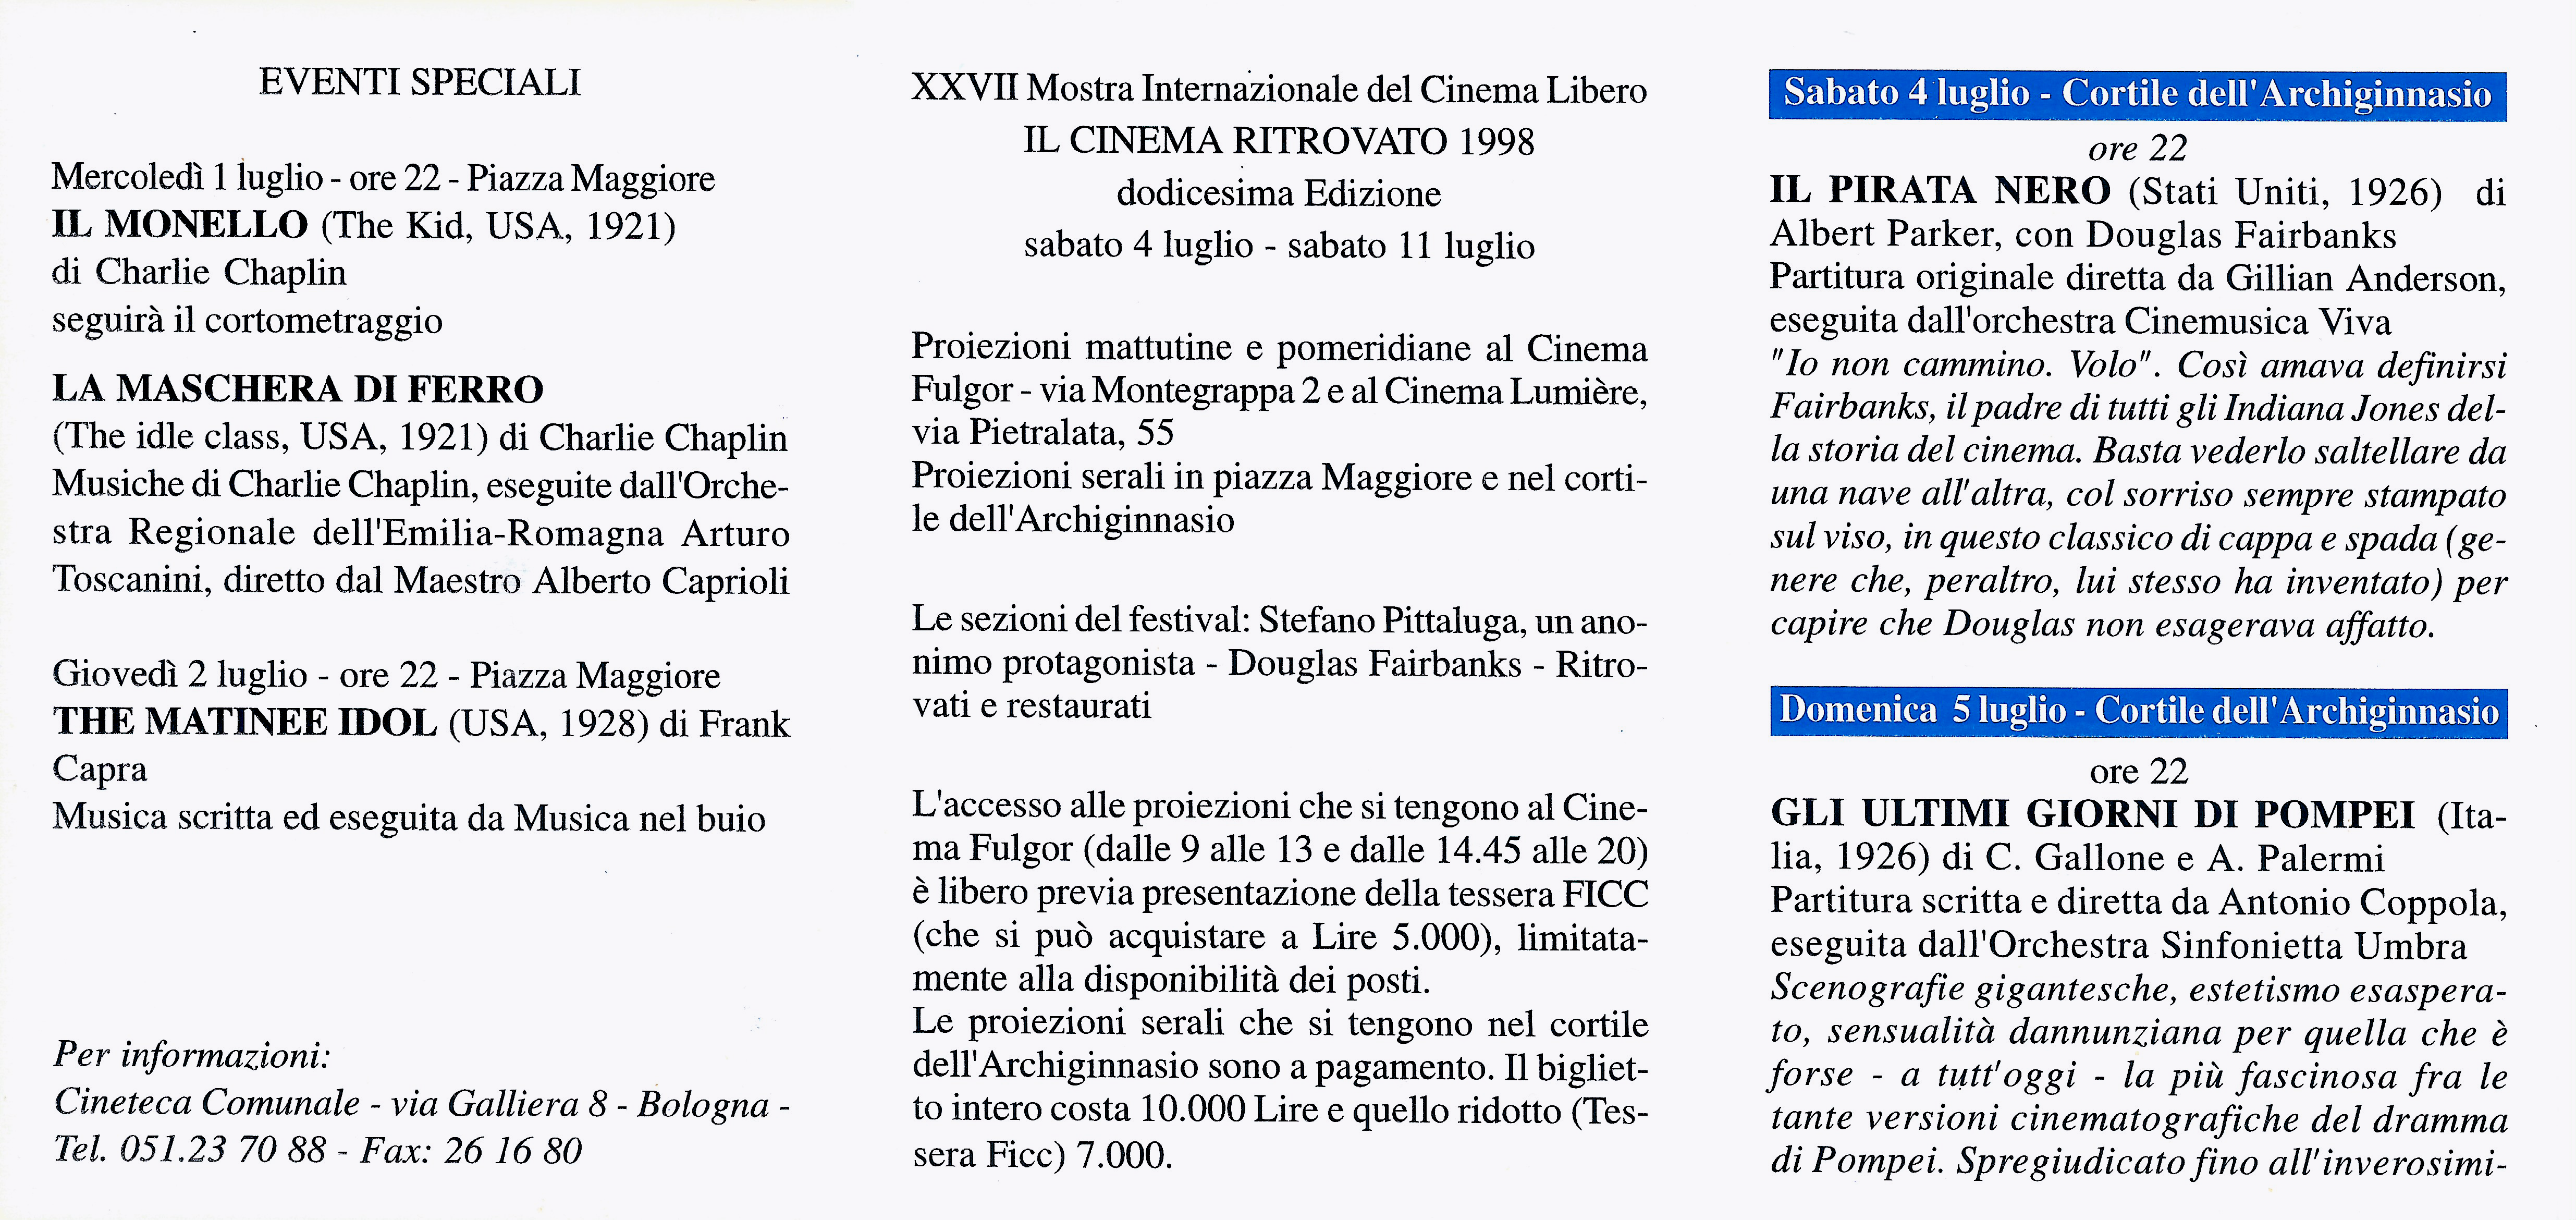 BOLOGNA, FESTIVAL IL CINEMA RITROVATO 1998, EVENTI SPECIALI, ORCHESTRA SINFONICA ARTURO TOSCANINI, ALBERTO CAPRIOLI, DIR.